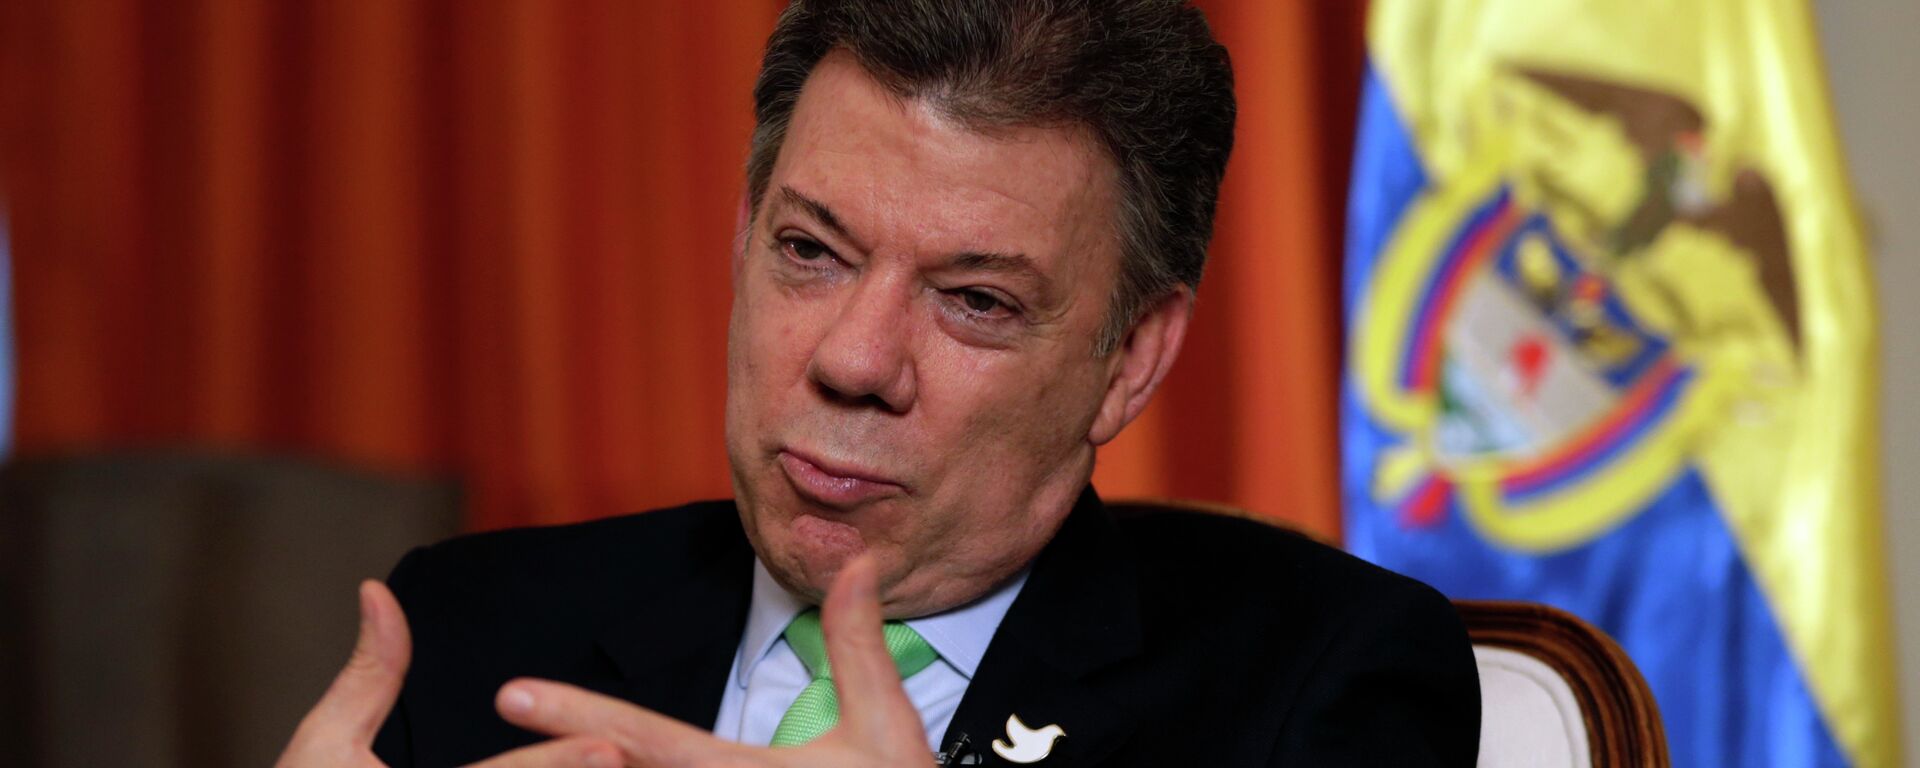 El ex mandatario colombiano Juan Manuel Santos (2010-2018)  - Sputnik Mundo, 1920, 25.11.2021